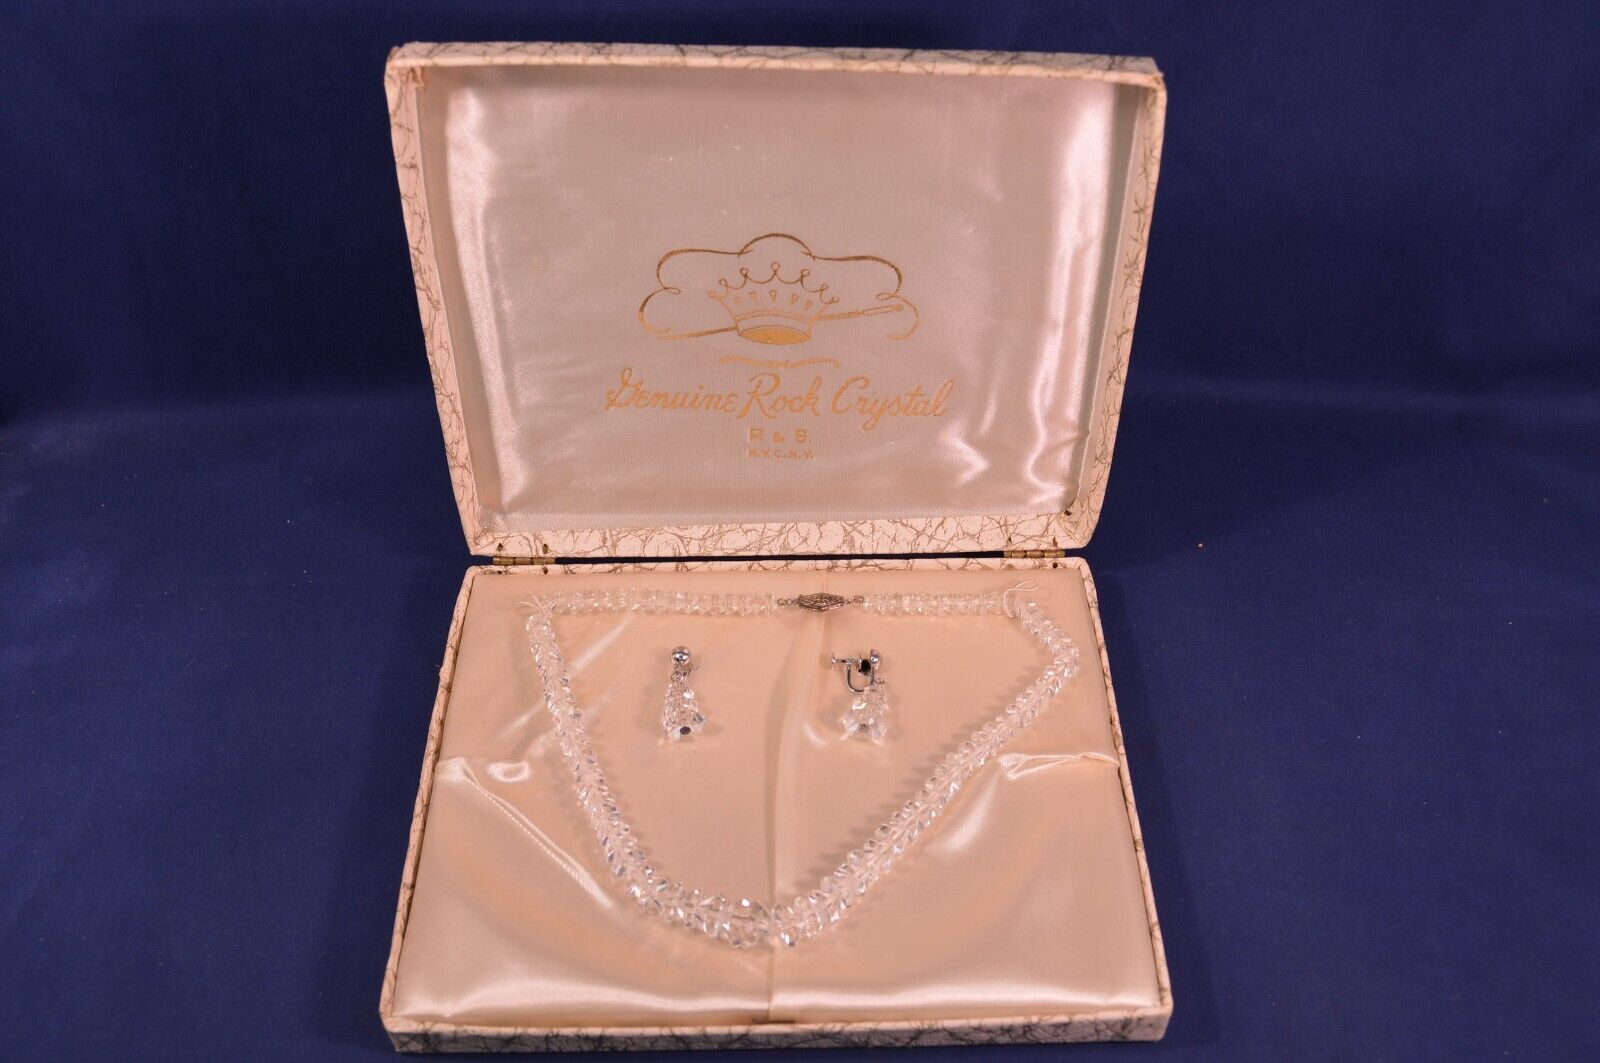 Vintage Genuine Rock Crystal Necklace & Sterling Earrings Set,P & S N.Y.C.N.Y.